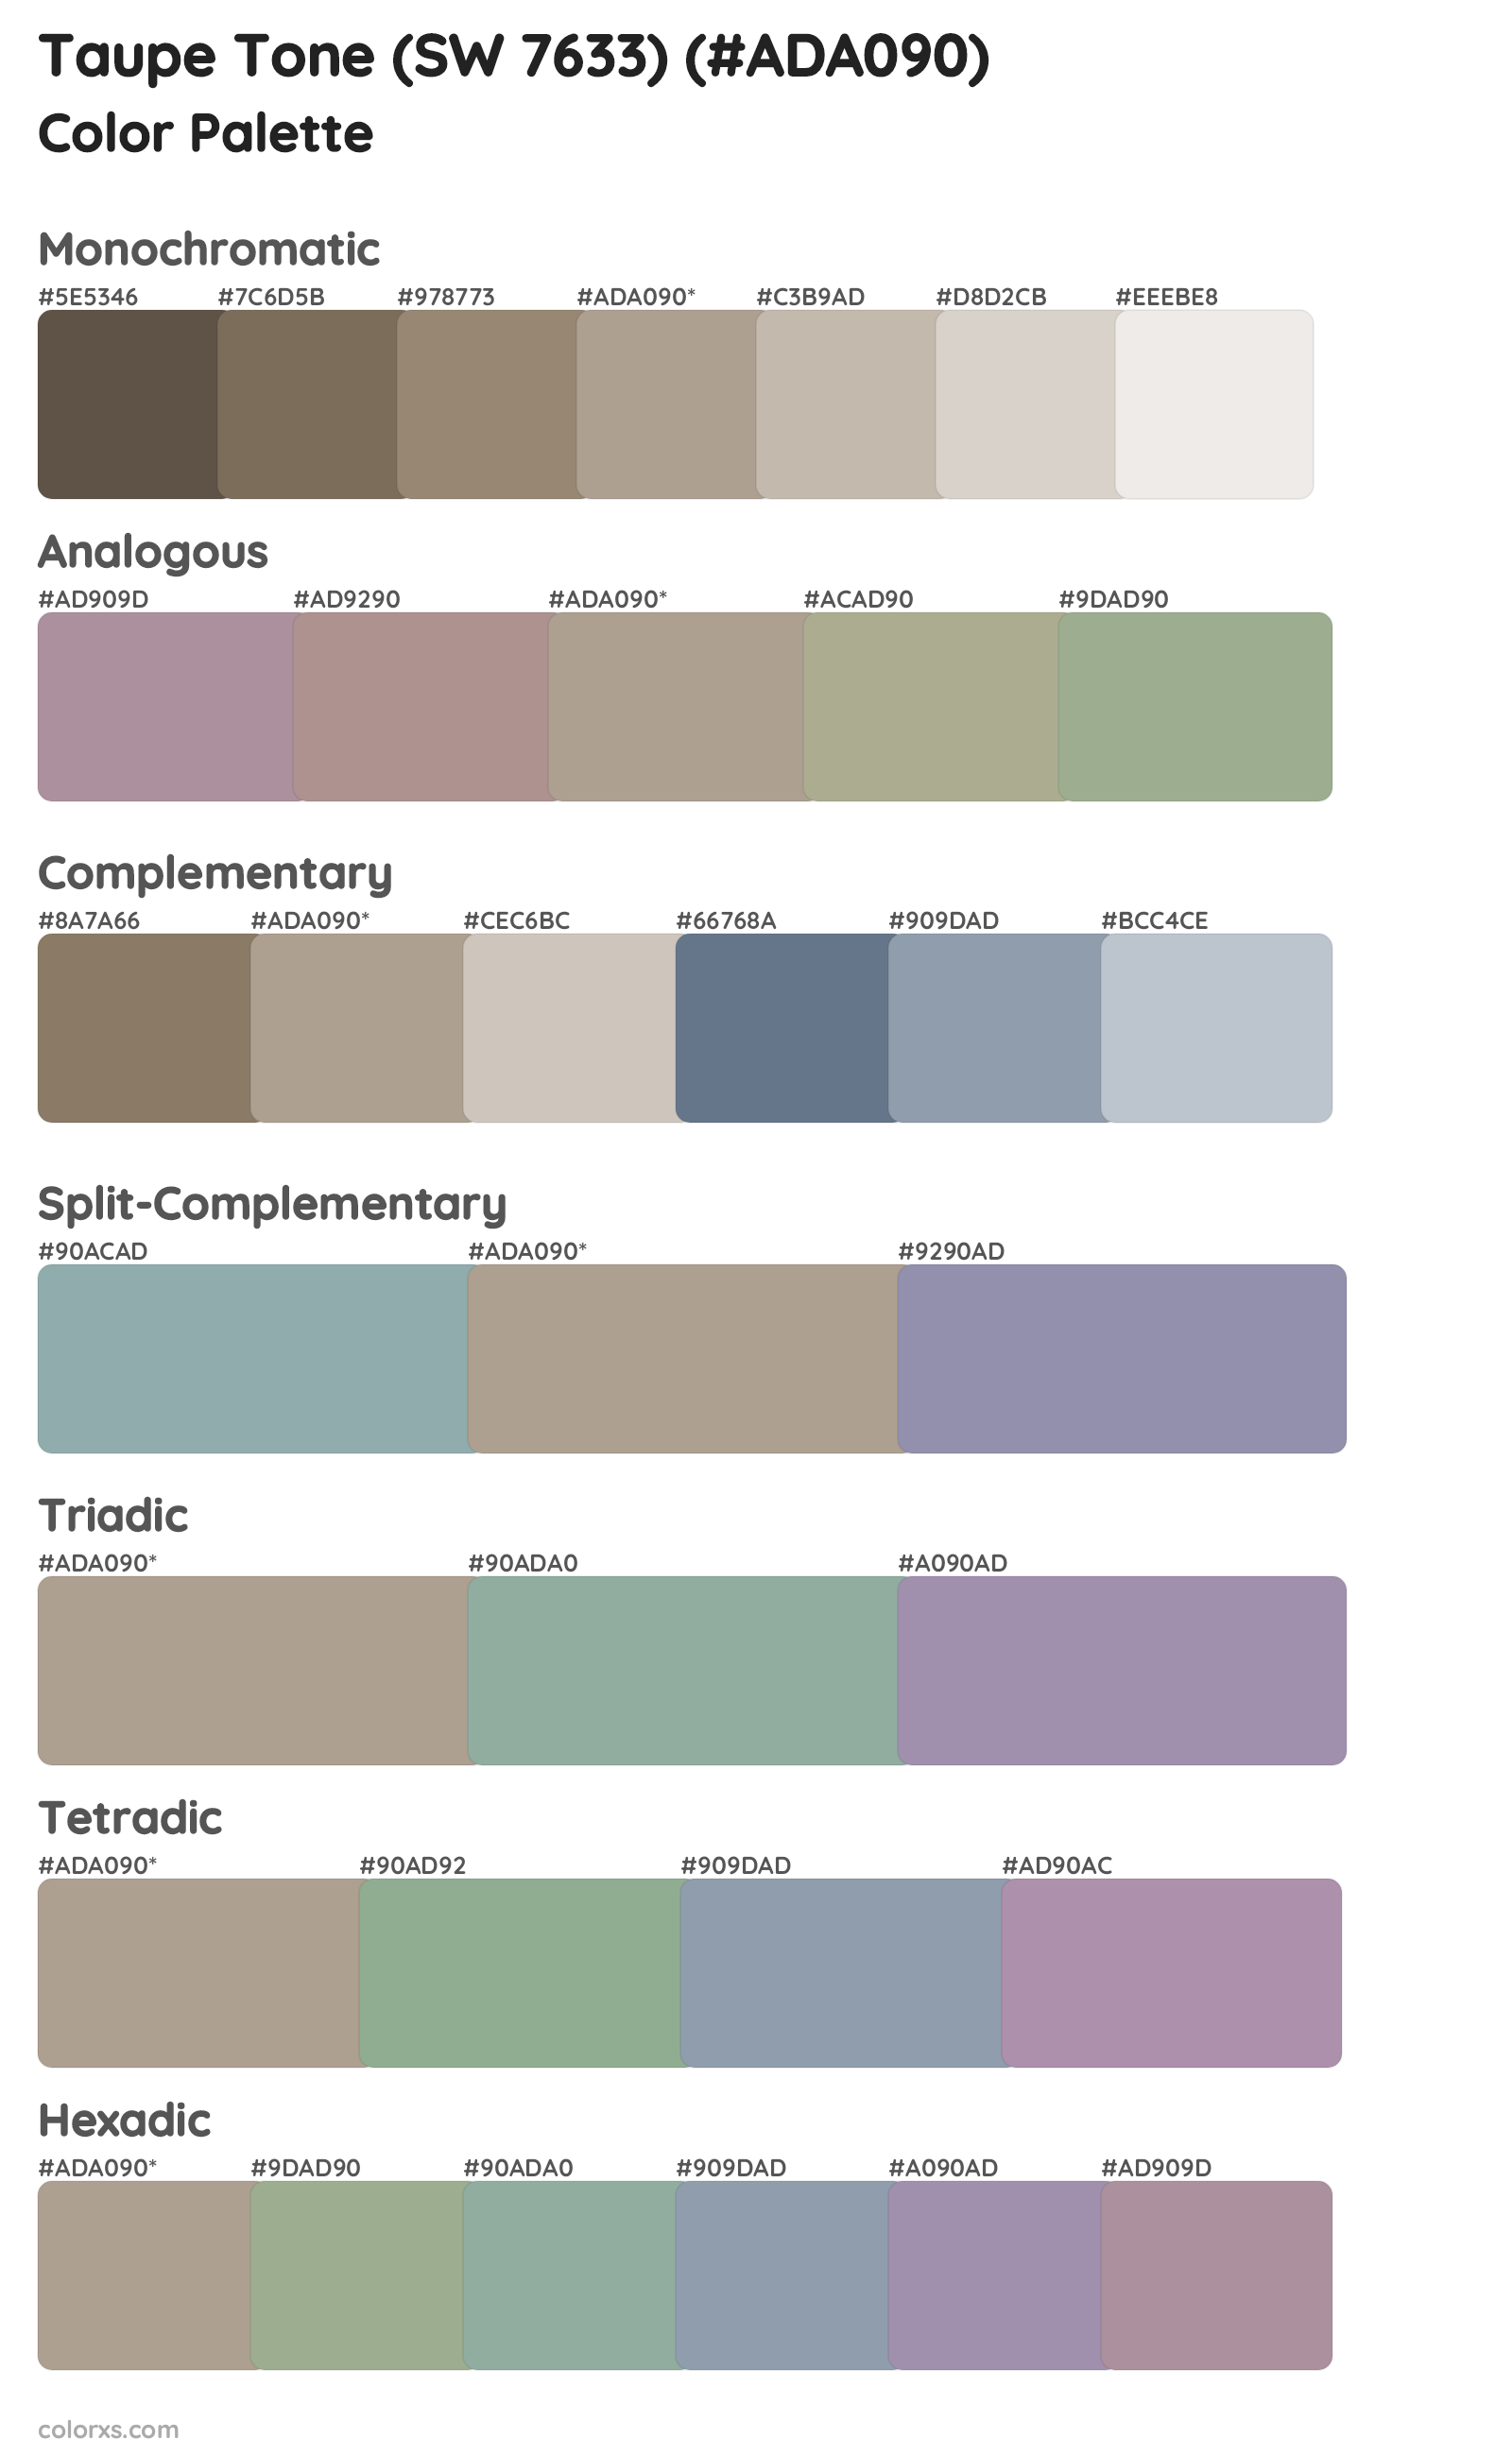 Taupe Tone (SW 7633) Color Scheme Palettes